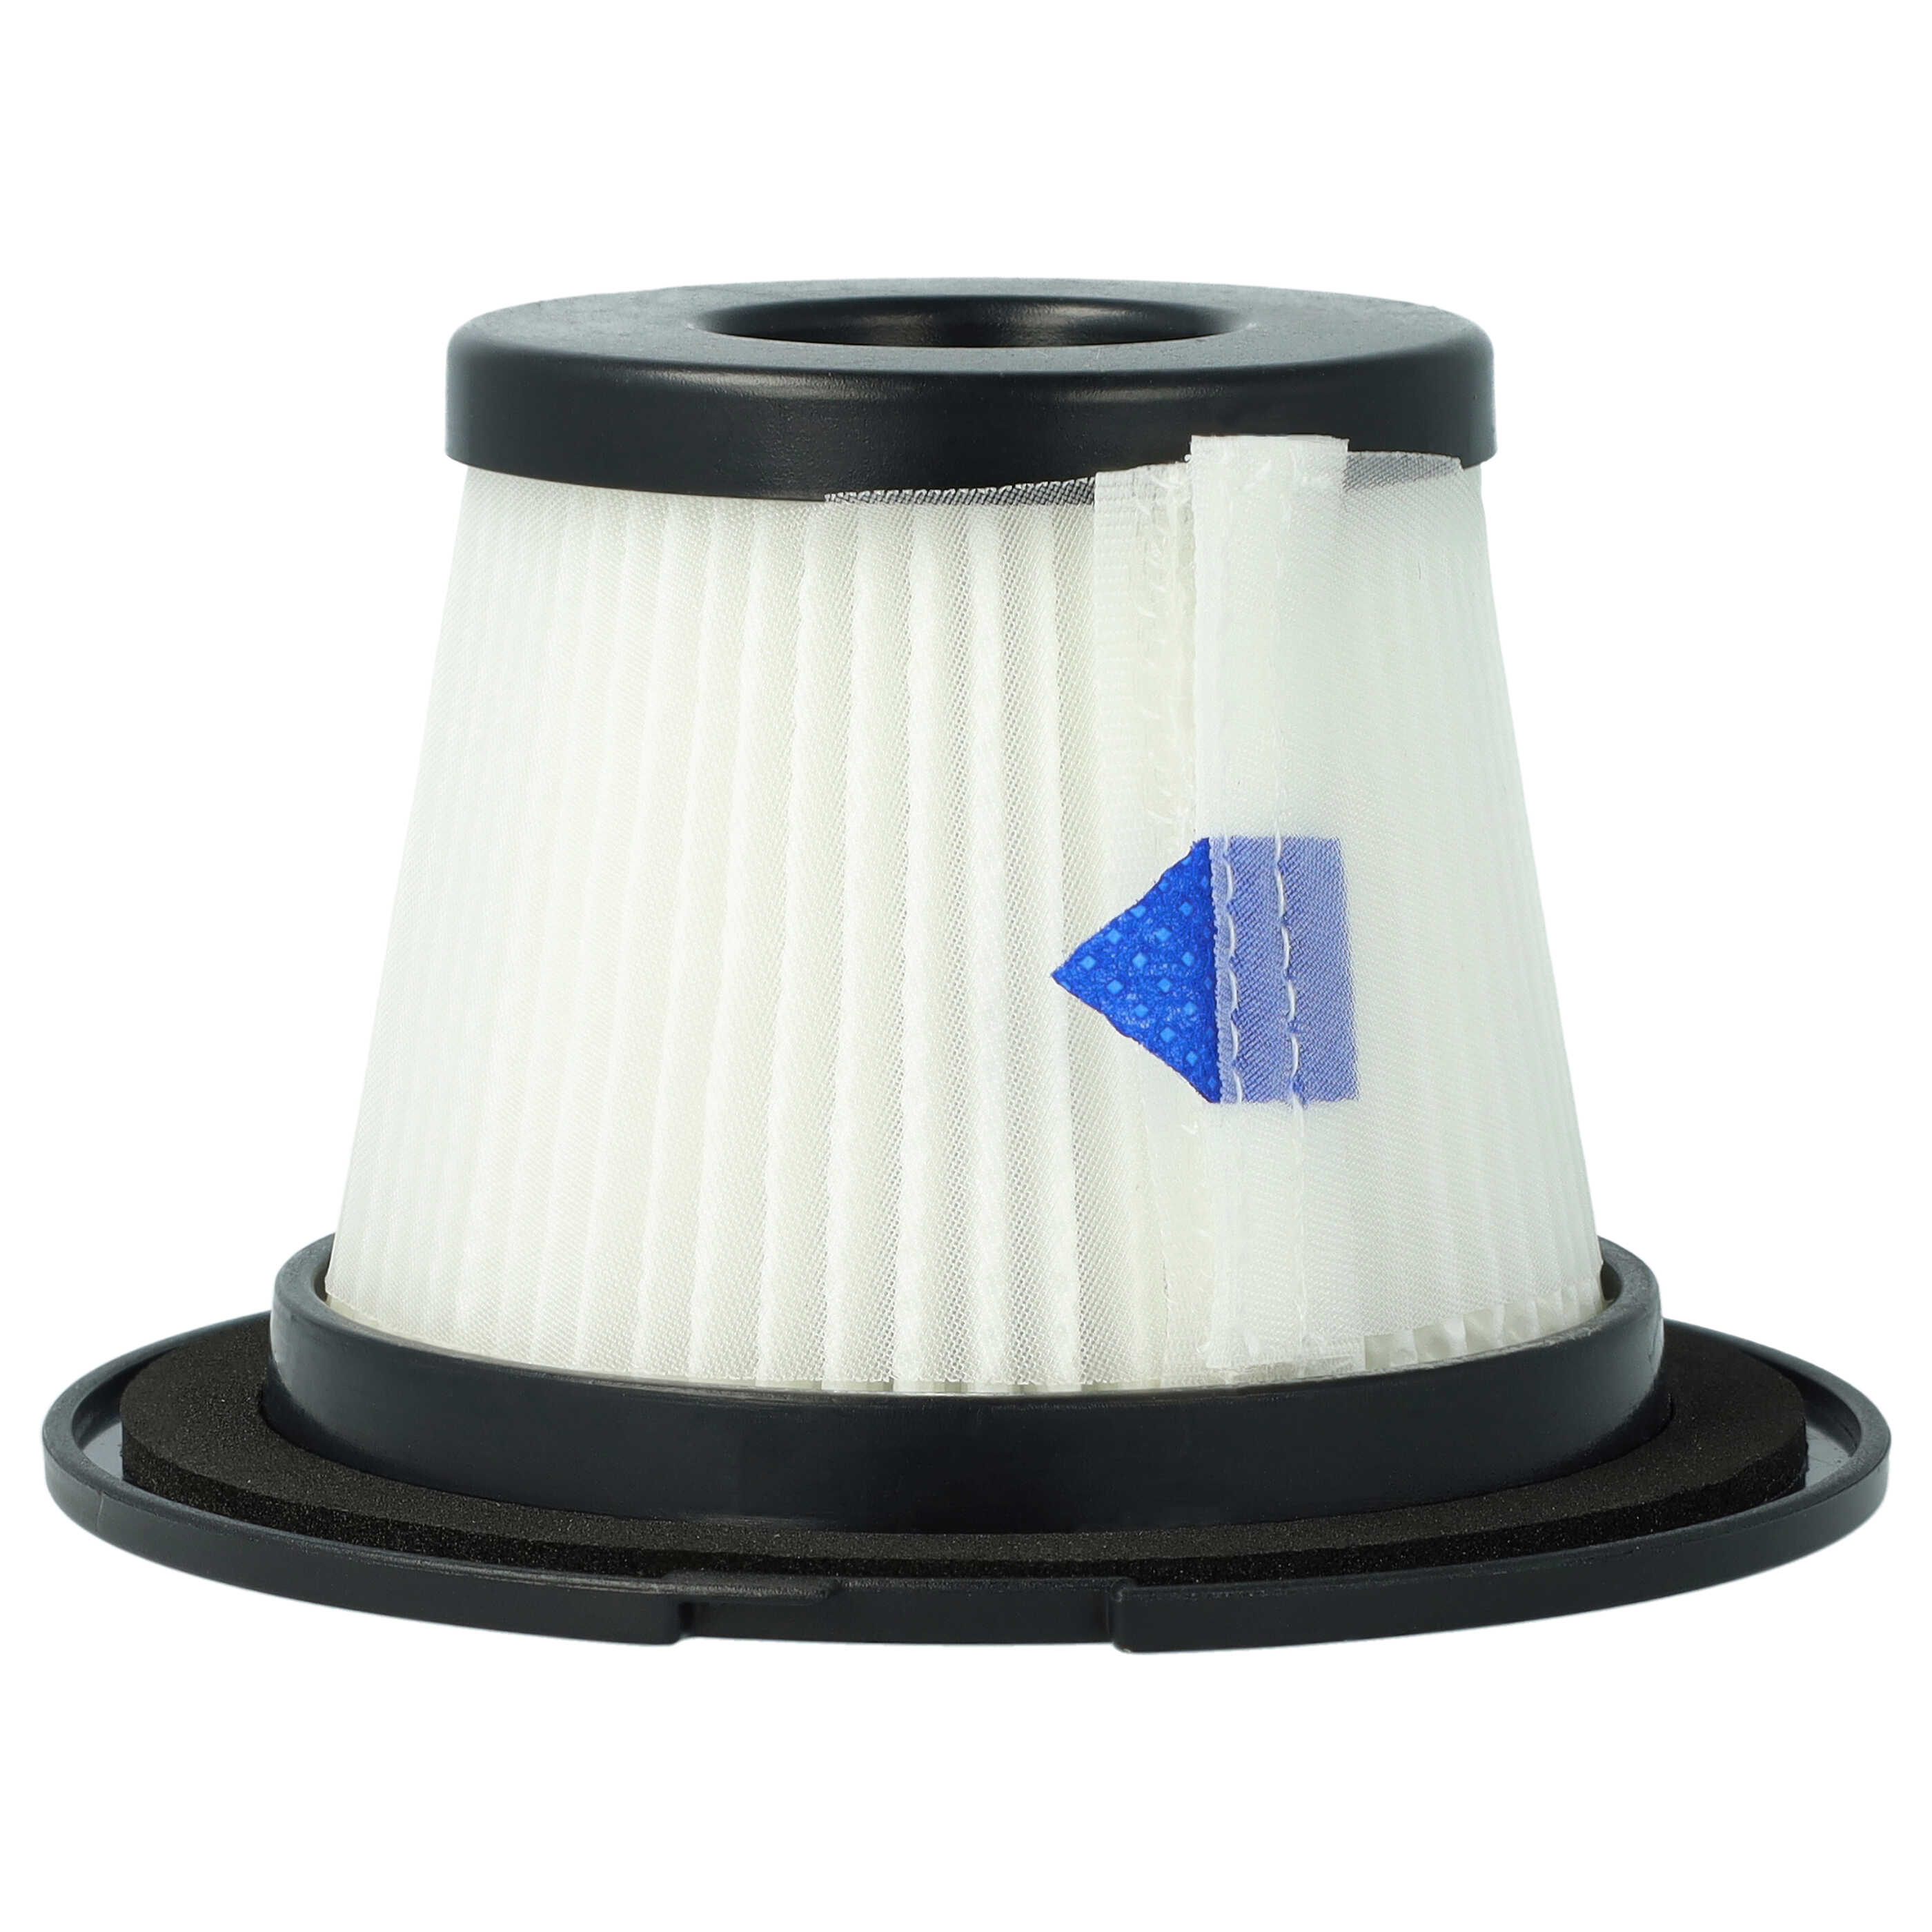 Filtre pour aspirateur Klarstein, Moosoo, Sauber Clean Butler 4G Silent 10033762 - filtre F8